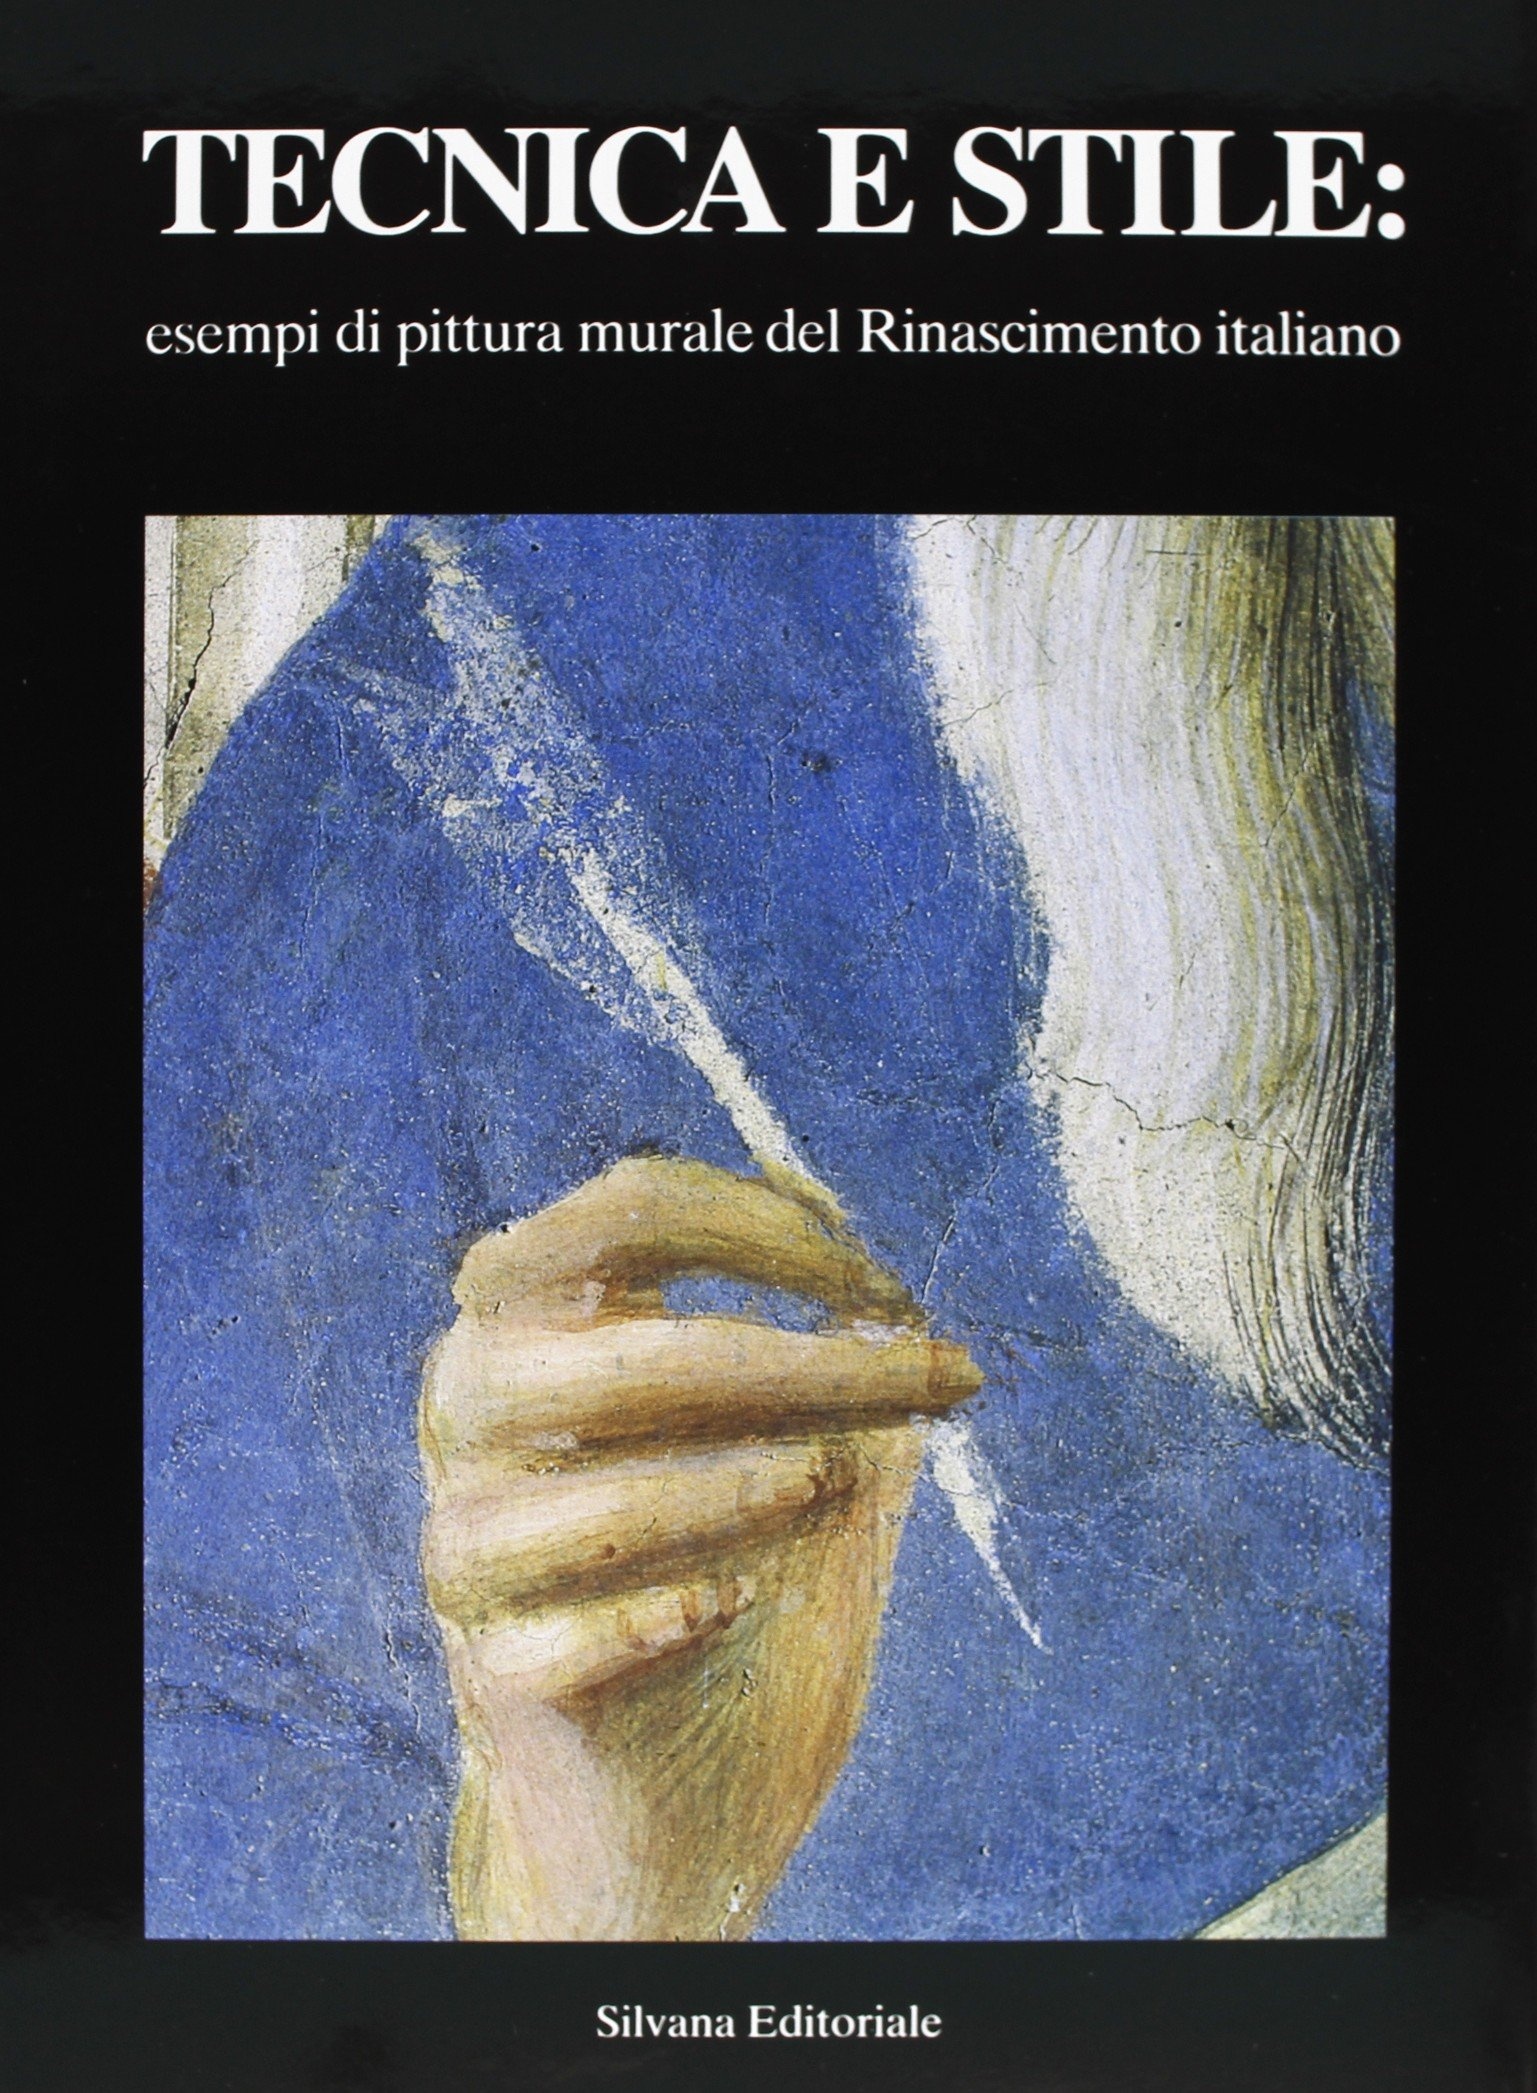 Tecnica e stile: esempi di pittura murale del Rinascimento italiano